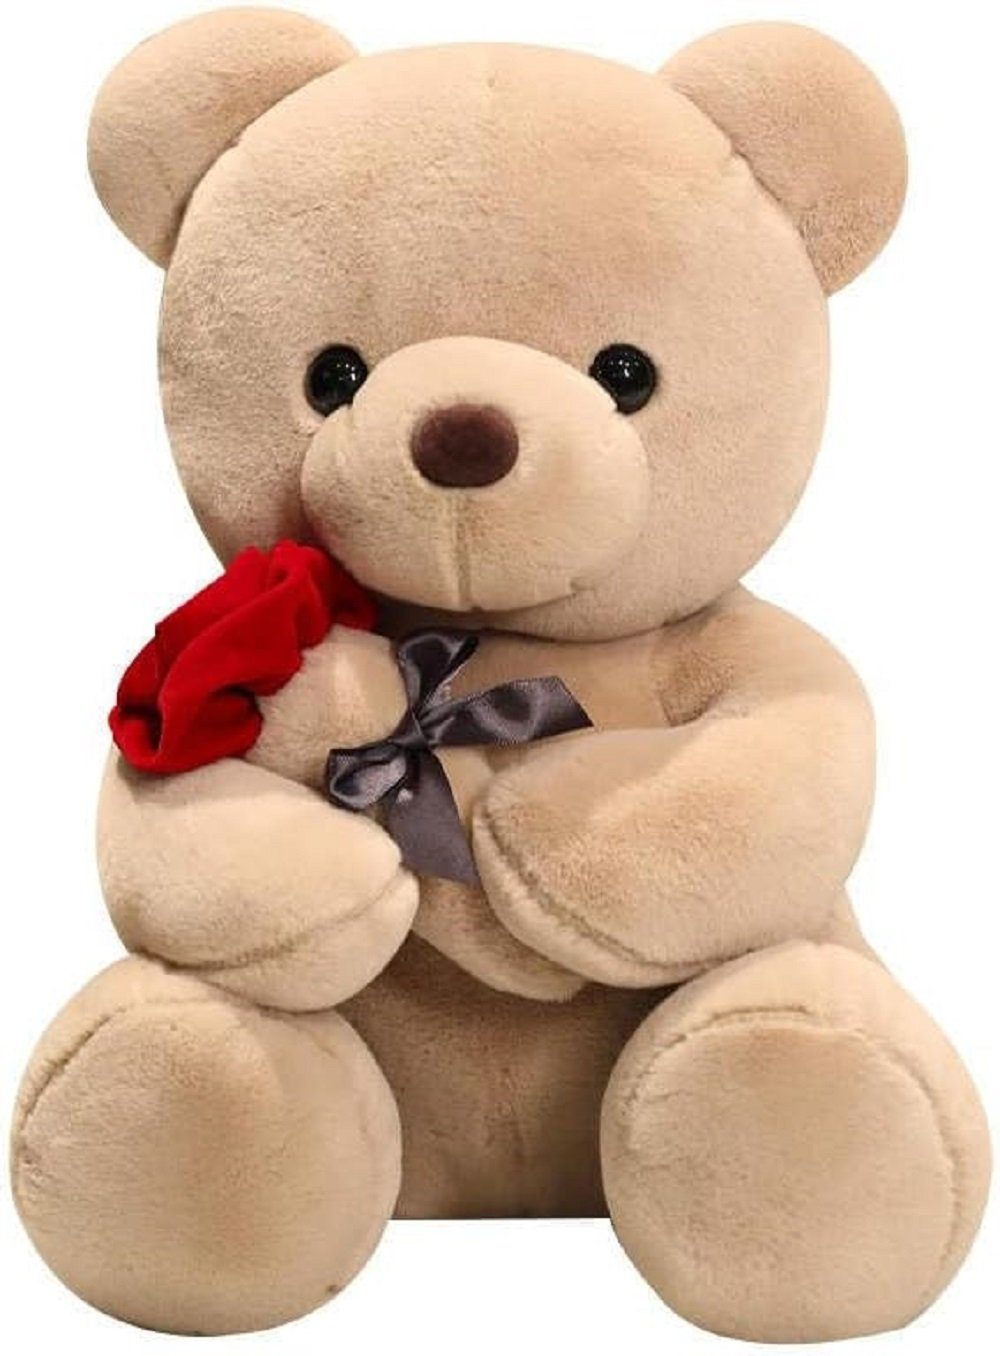 Wiztex Kuscheltier Cuddle Buddy Teddy Bär 23 CM Plüsch Spielzeug Geschenk für Kinder